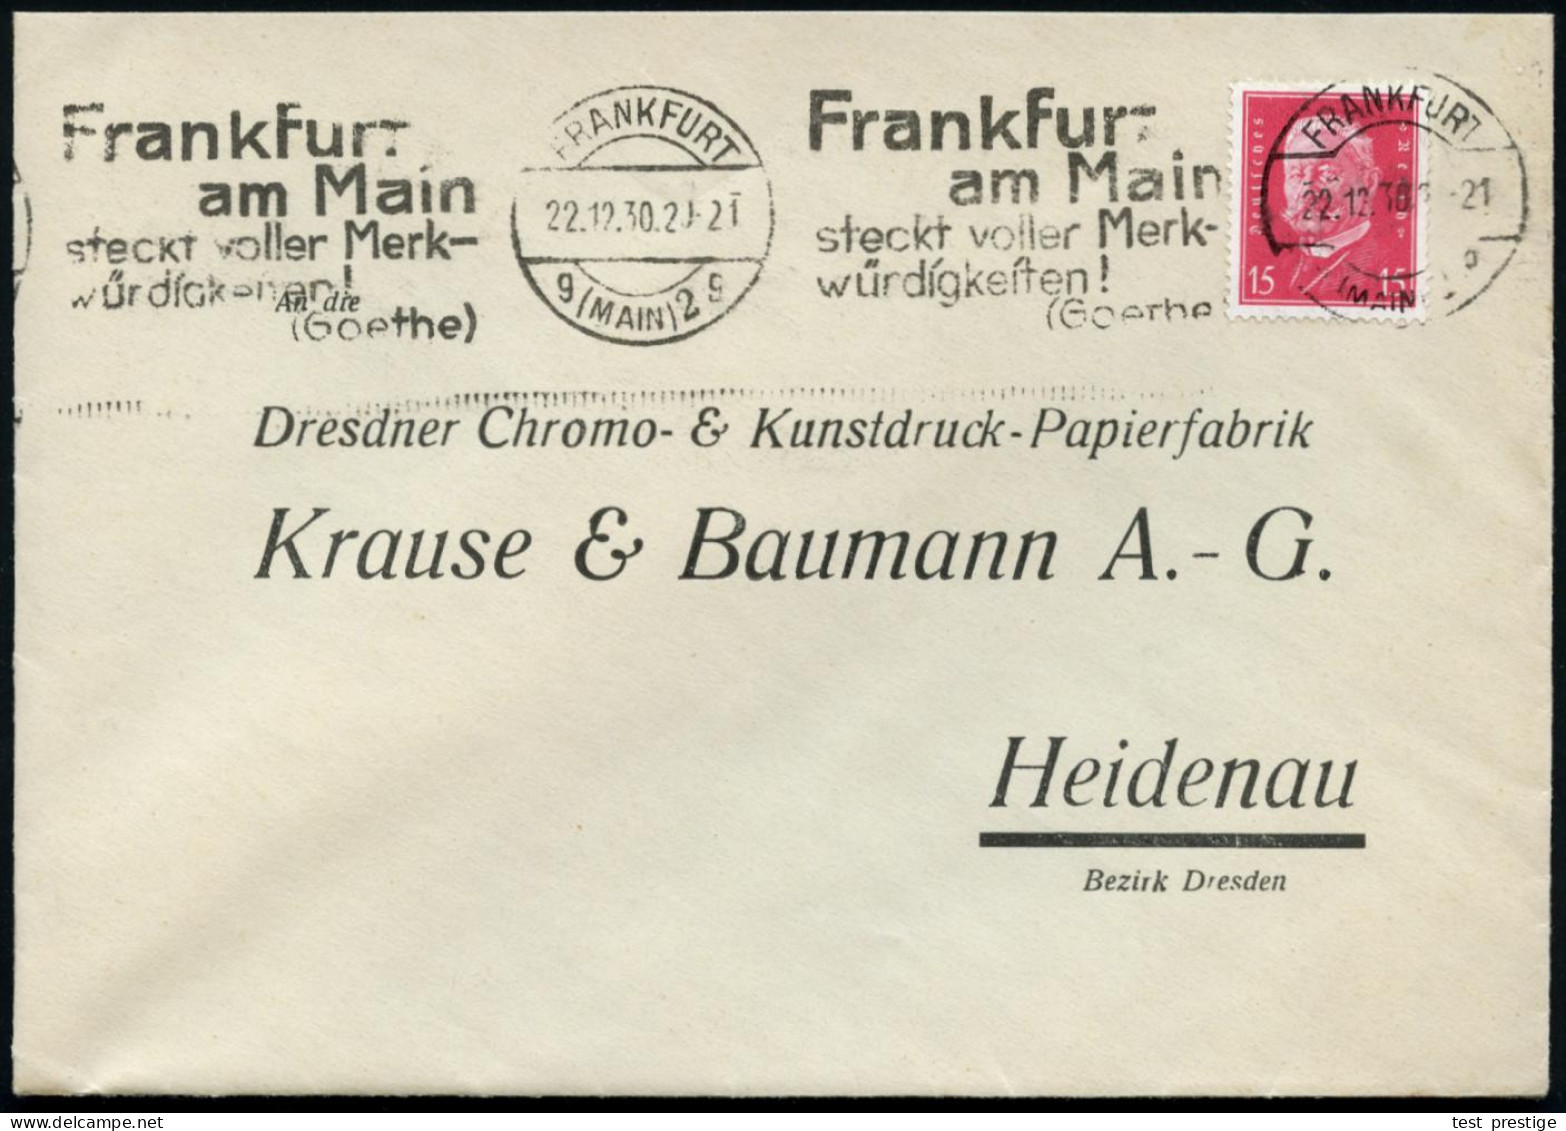 FRANKFURT/ G(MAIN)2/ G/ Frankfurt/ ..steckt Voller Merk-/ Würdigkeiten!/ (Goethe) 1931 (18.10.) Band-MWSt Klar Auf Firme - Schrijvers